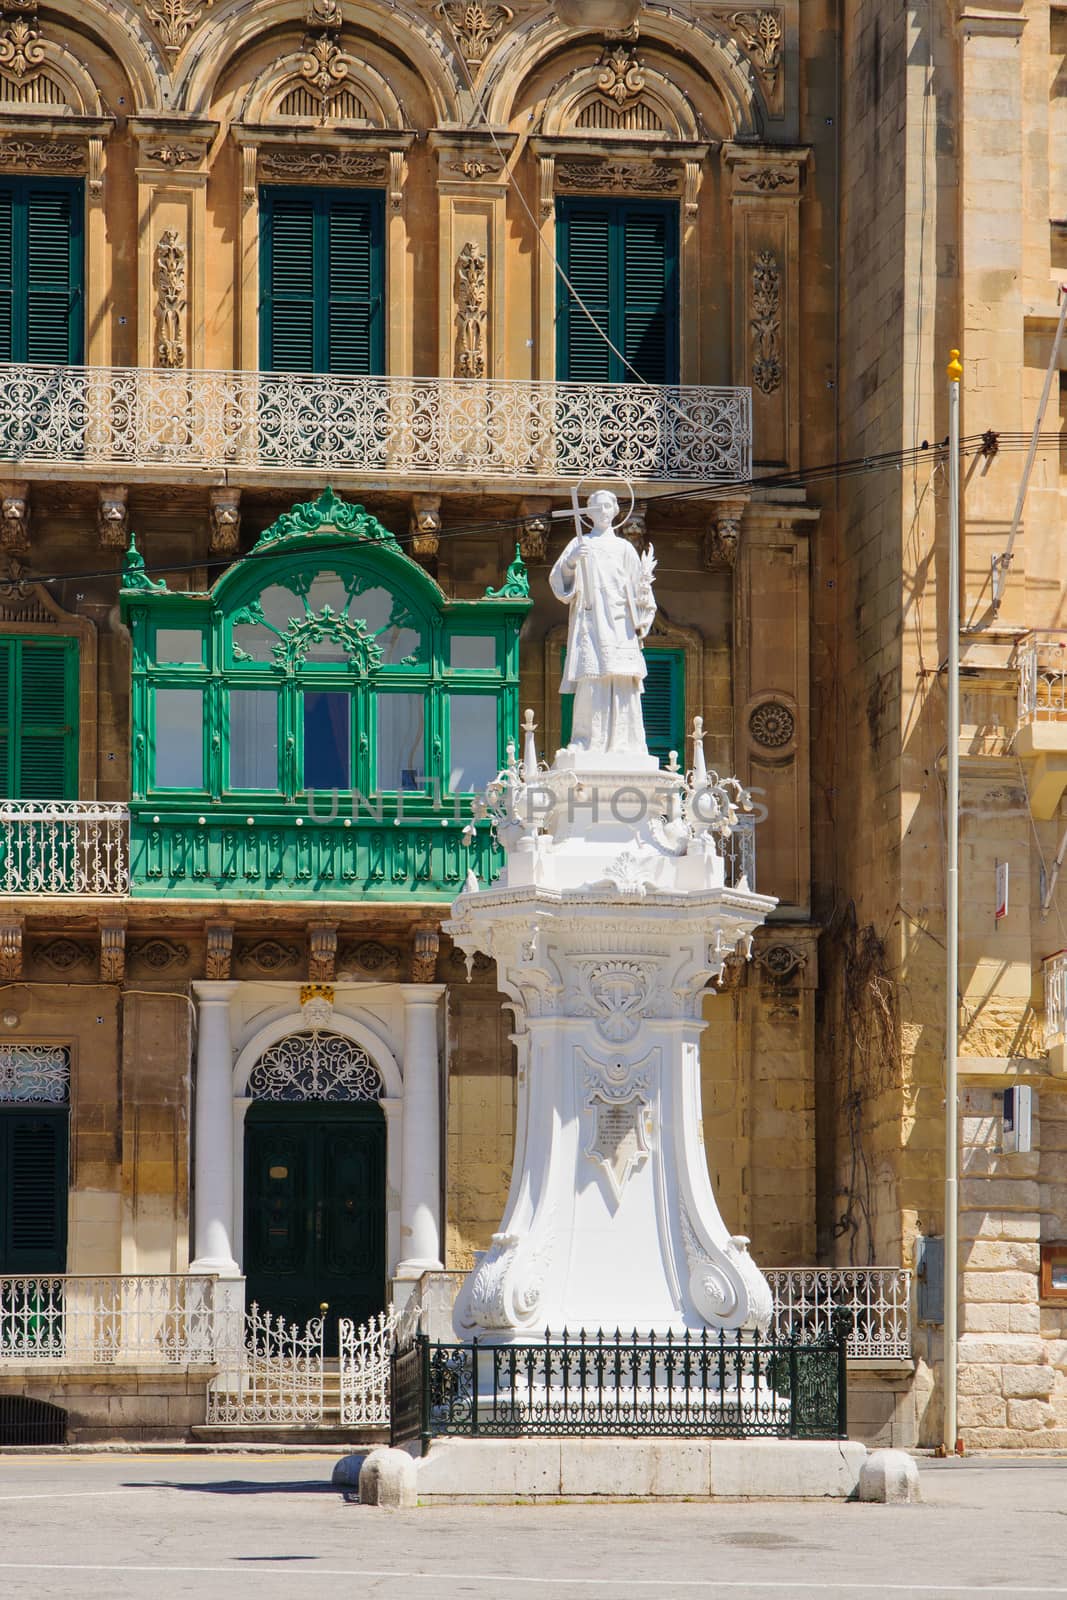 Birgu, Malta by RnDmS